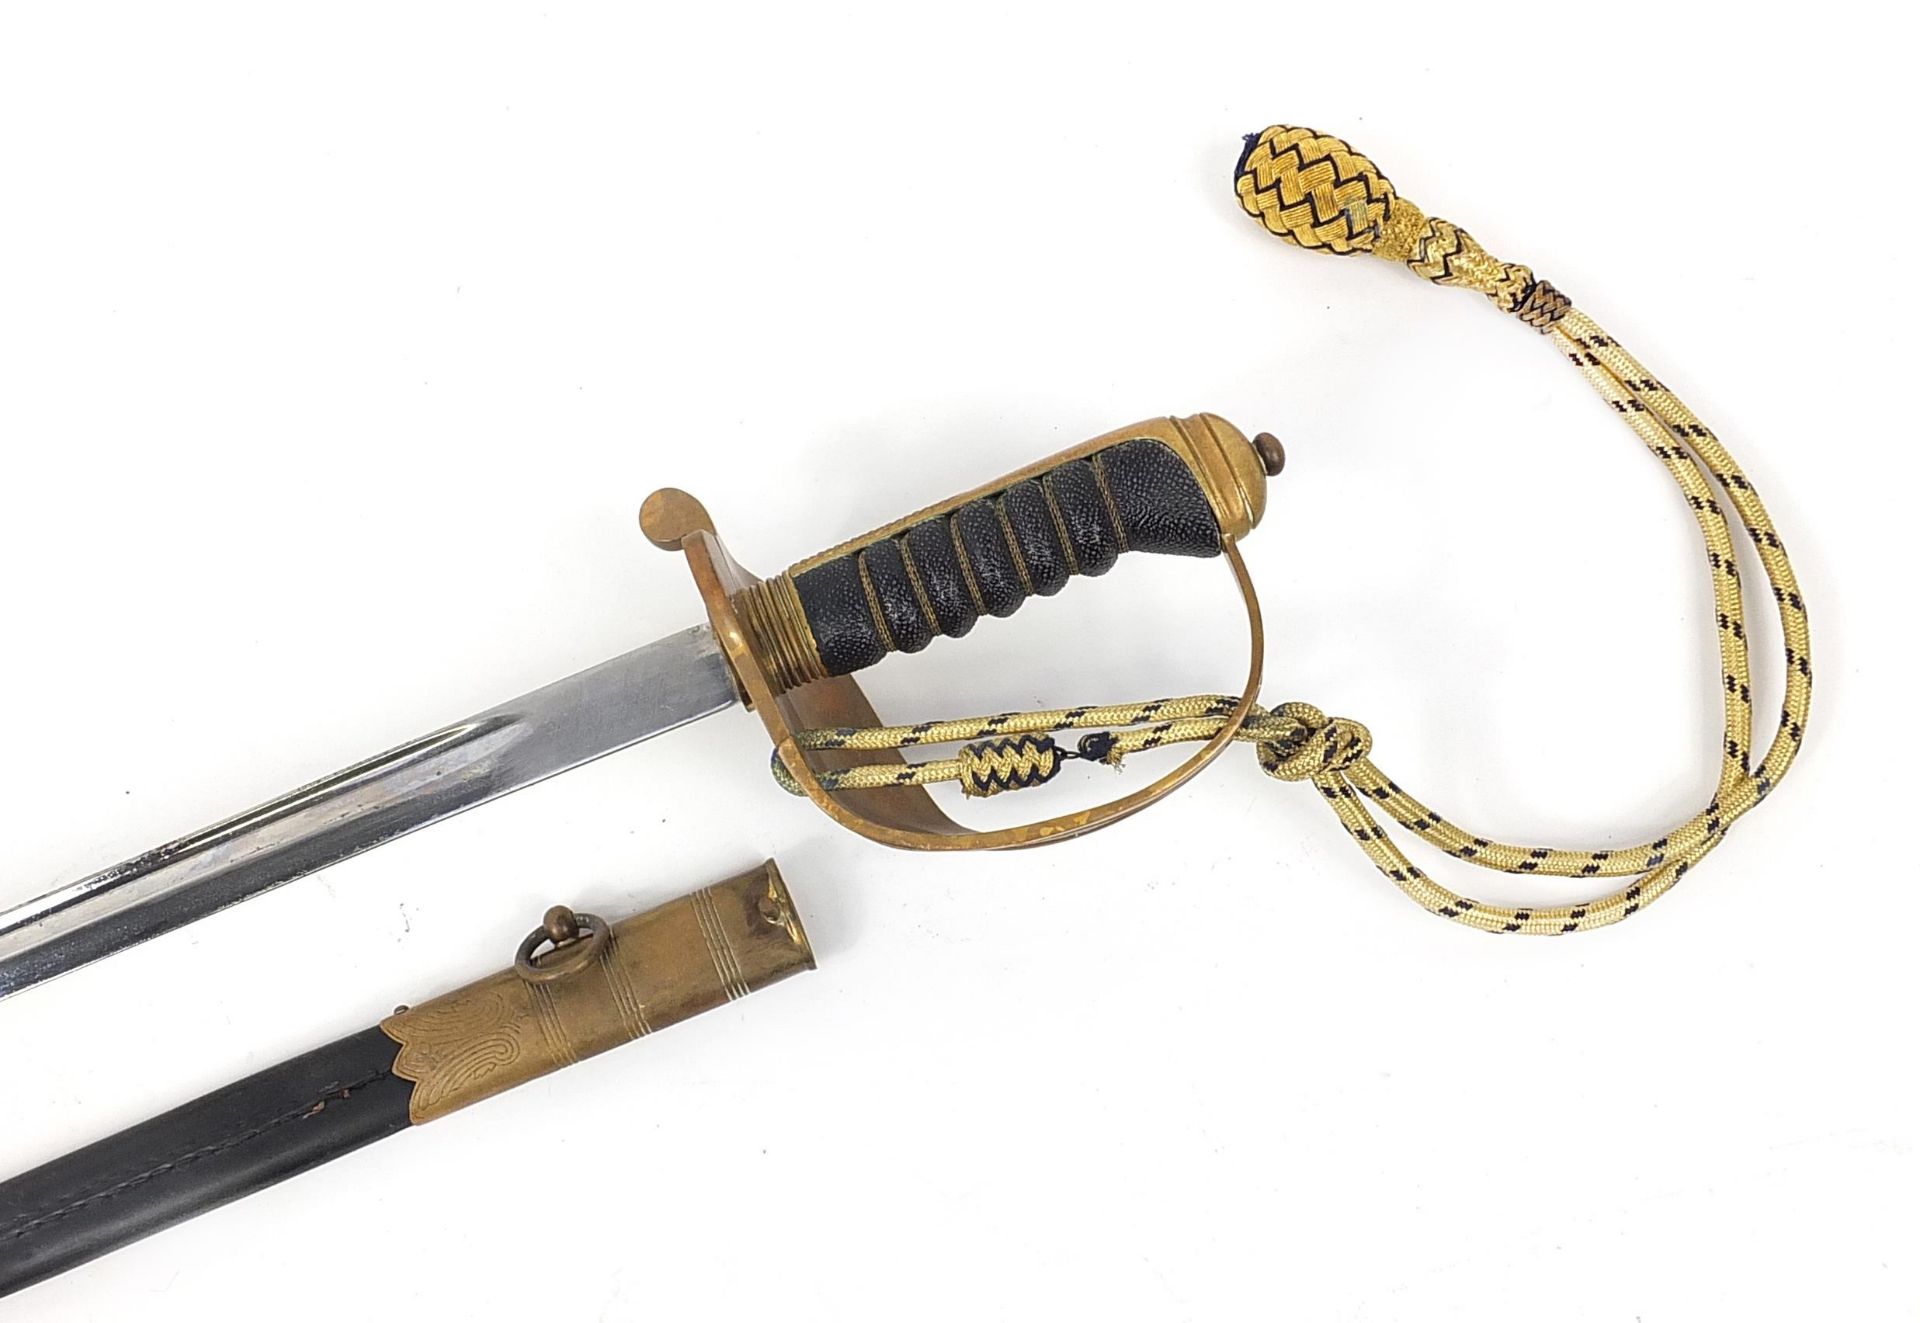 Elizabeth II naval interest dress sword with scabbard by Wilkinson, 96cm in length